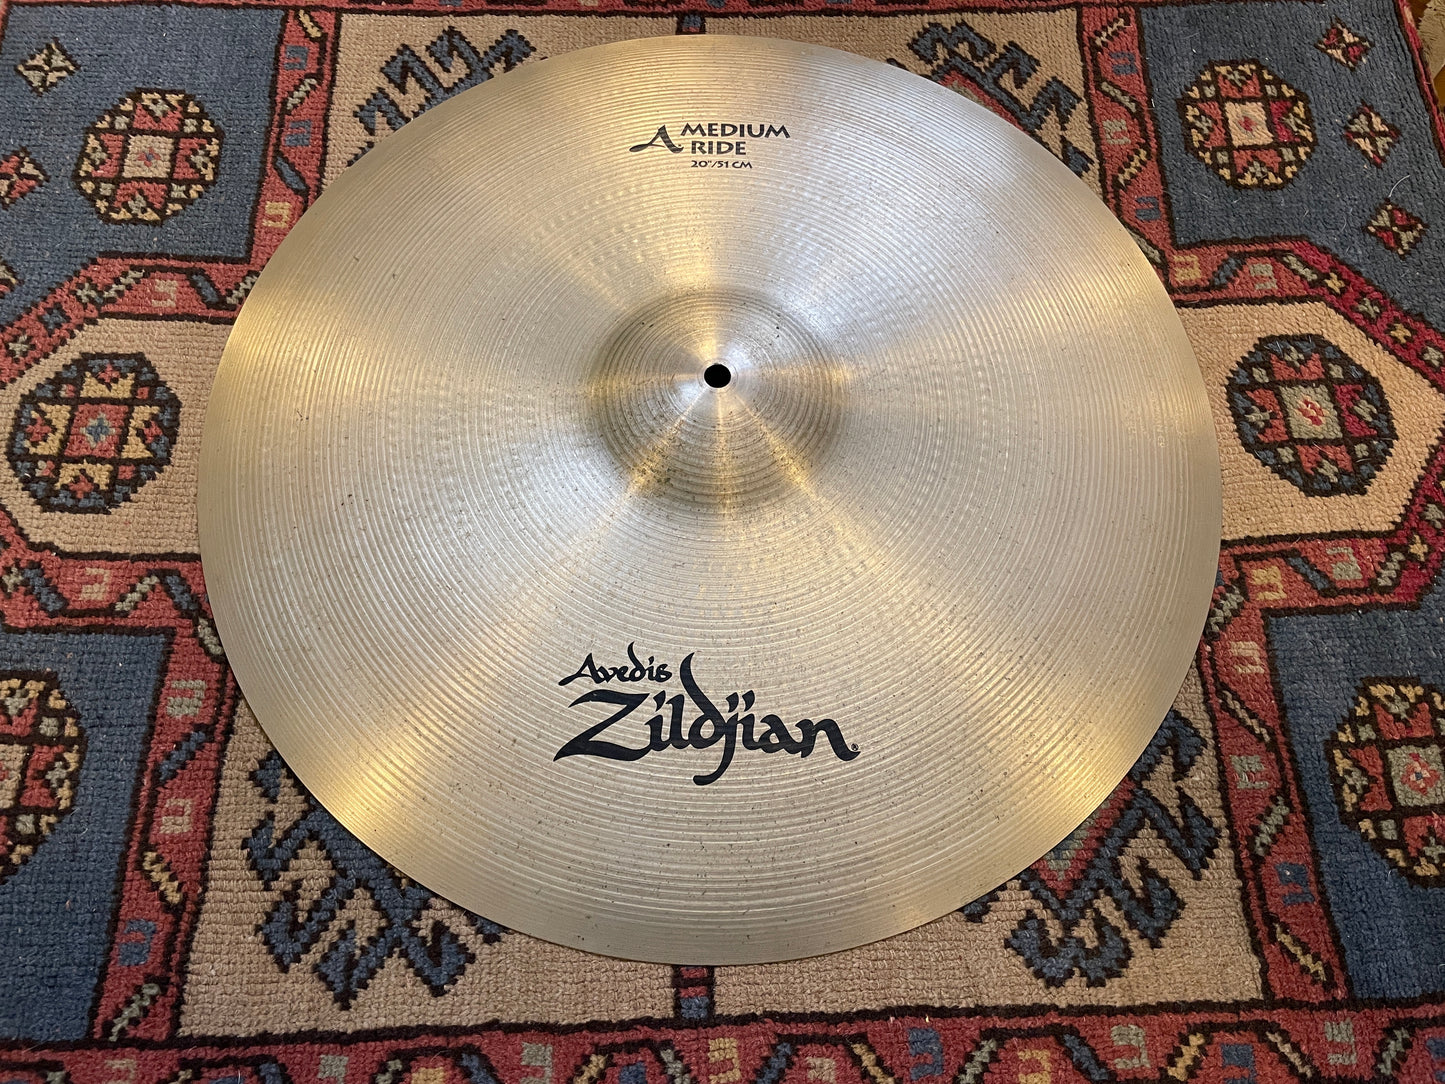 20" Zildjian A Medium Ride Cymbal 2518g A0034